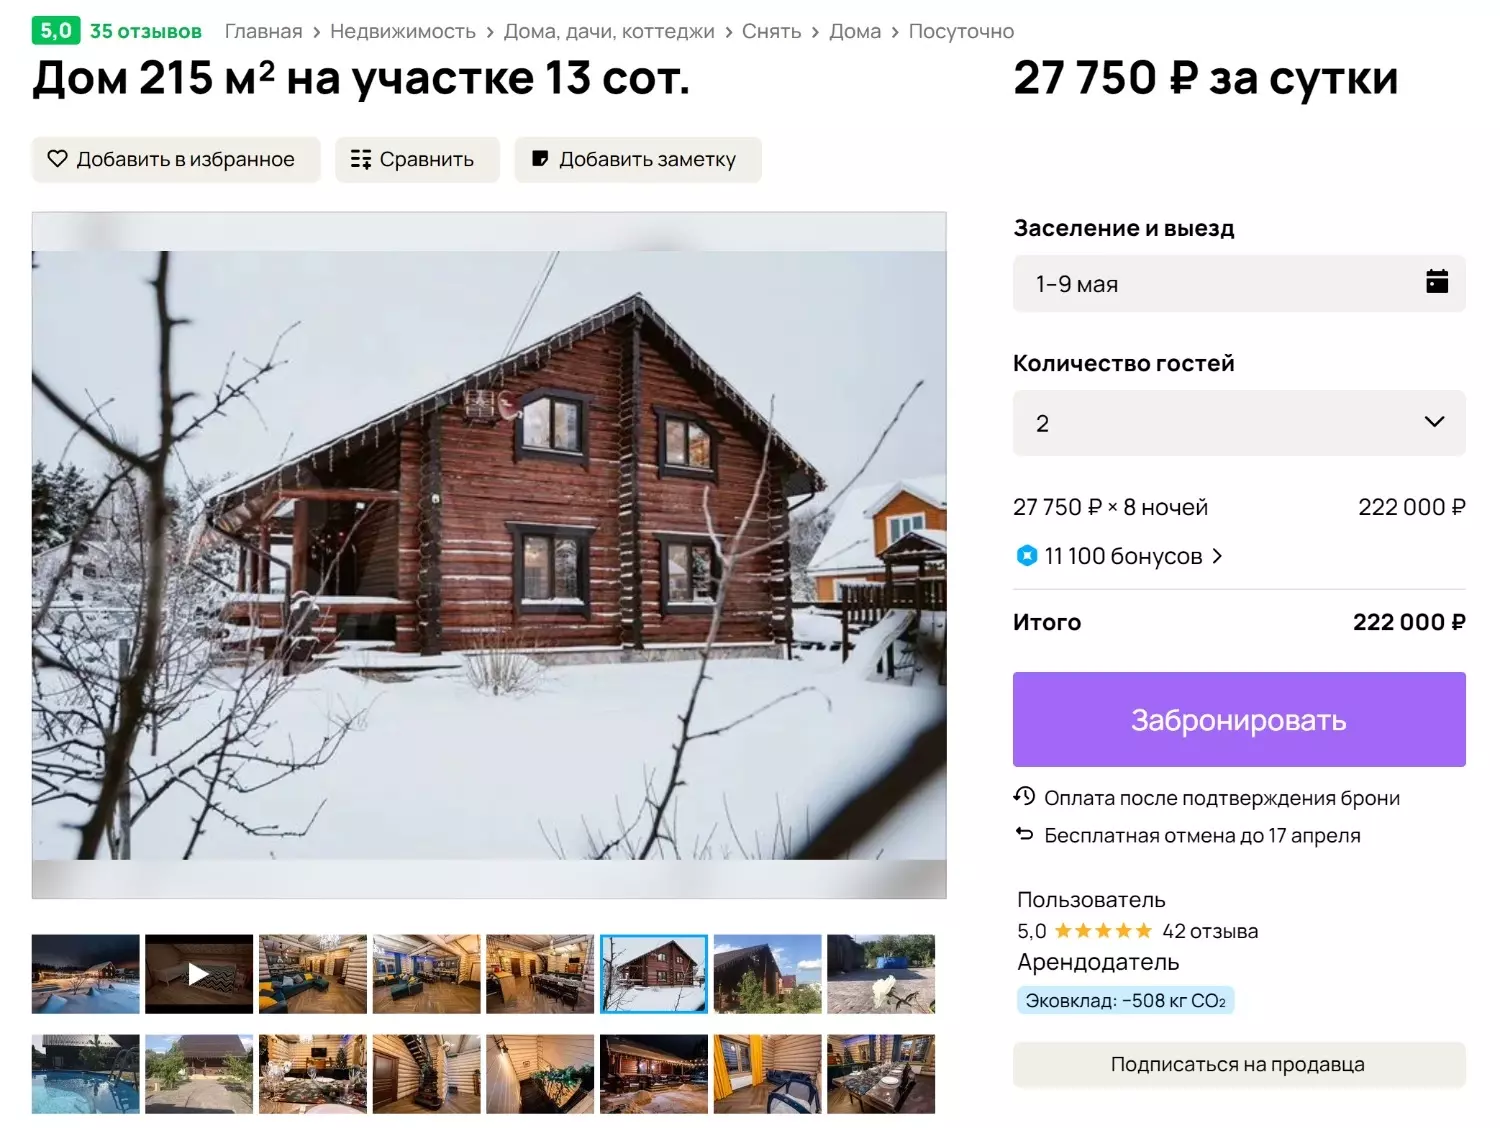 Бронируя дом в Московской области на майские праздники, стоит быть готовым к очень высоким ценам